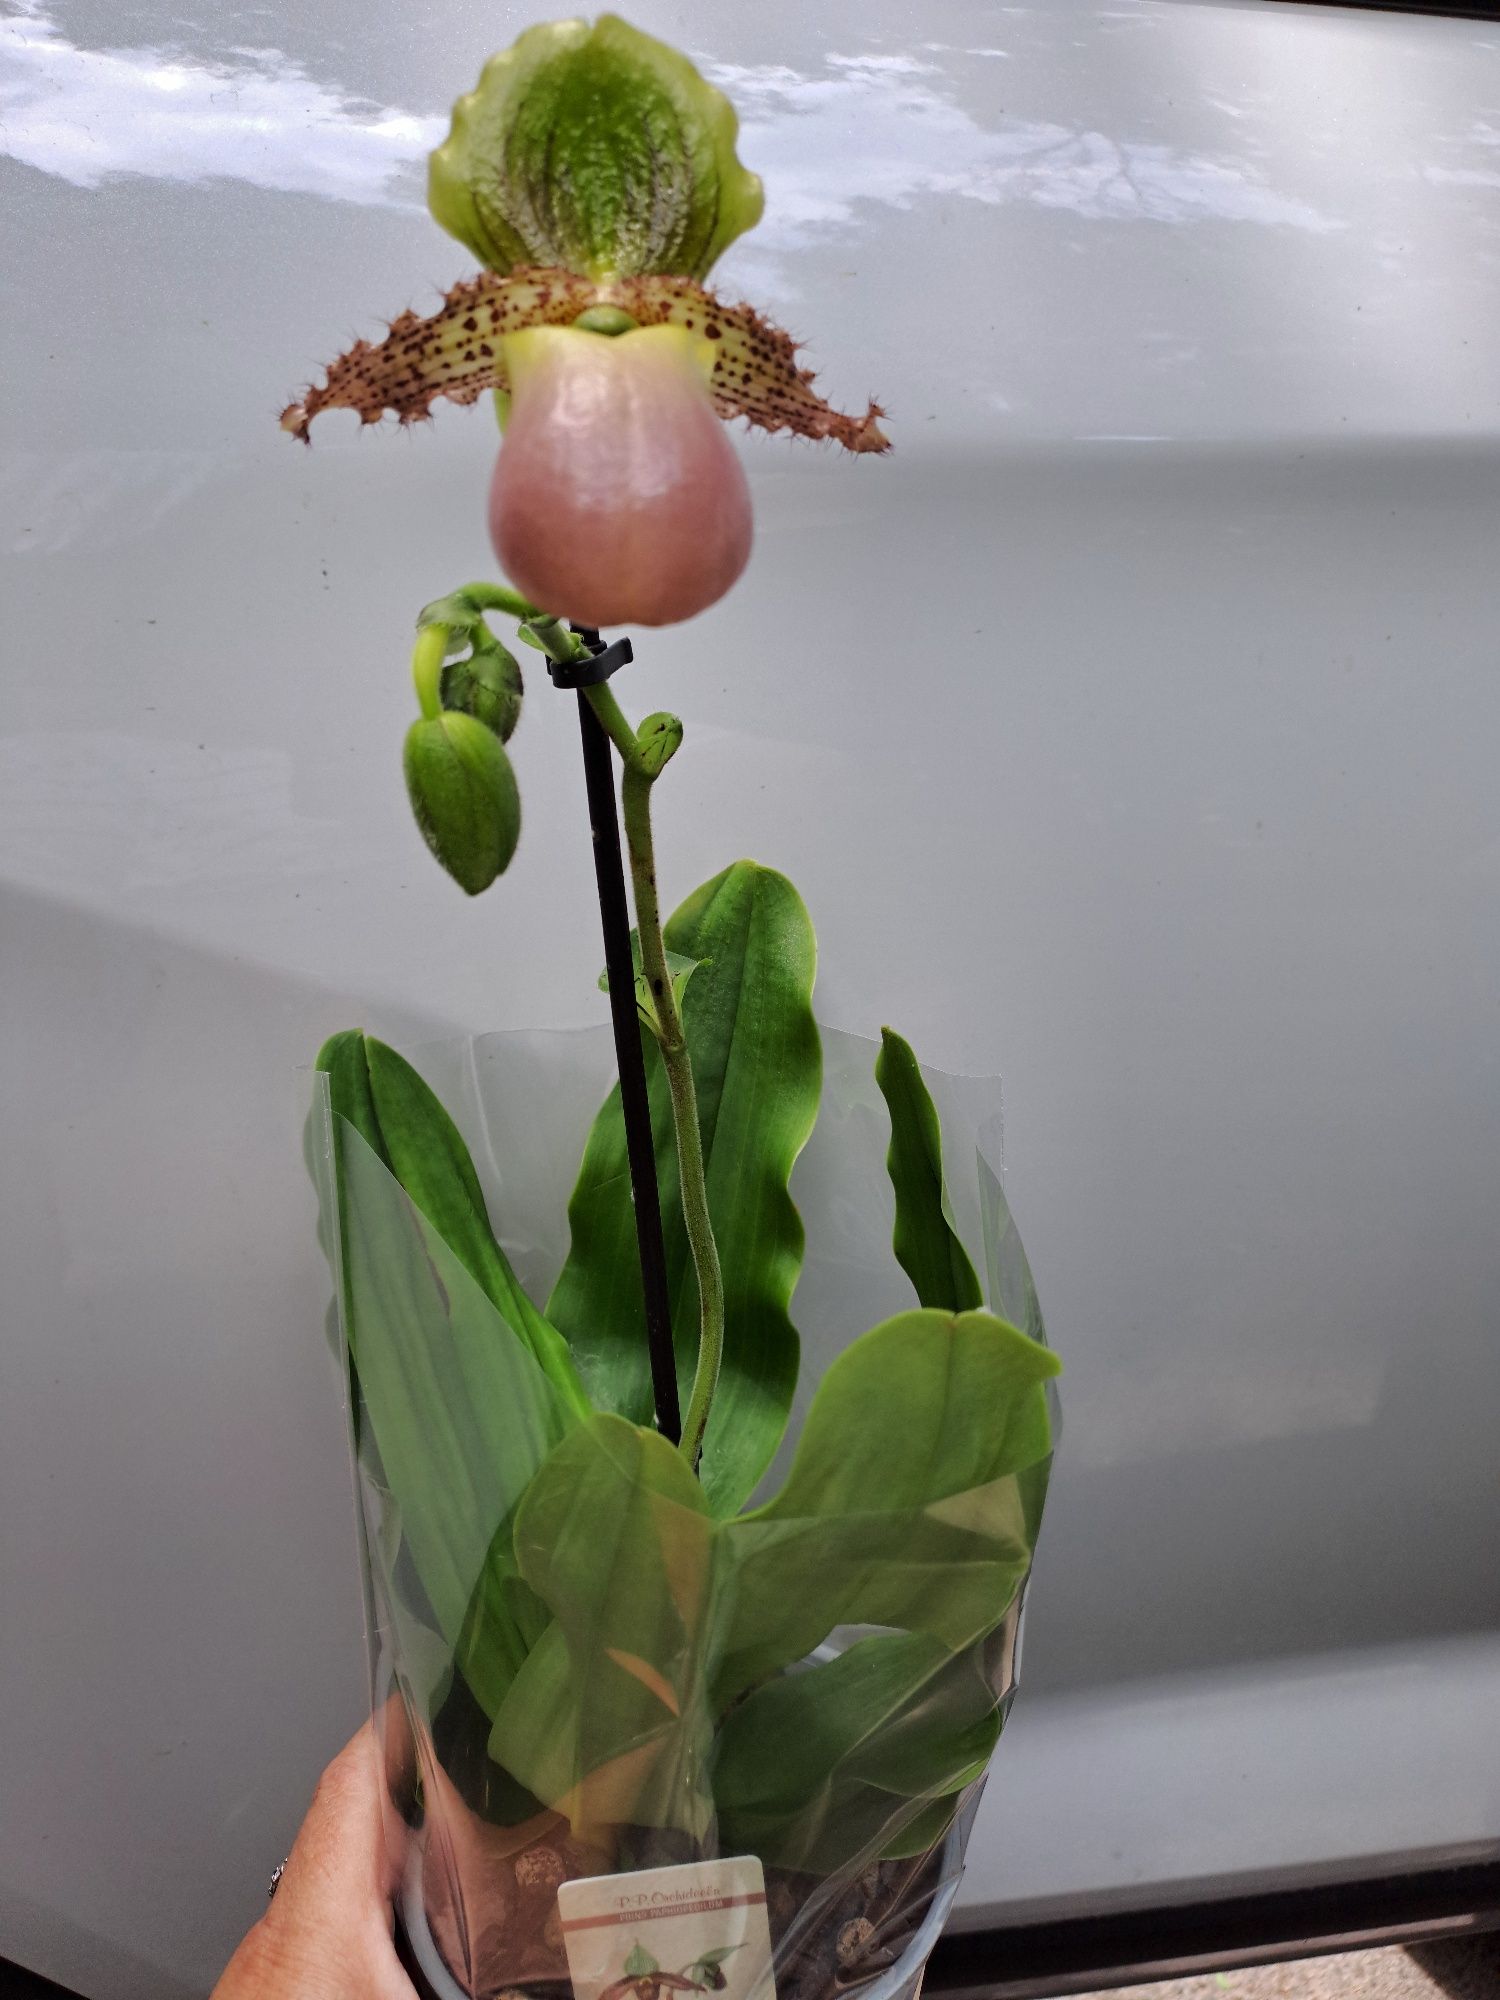 Орхидея пинокио(венерин башмачок)